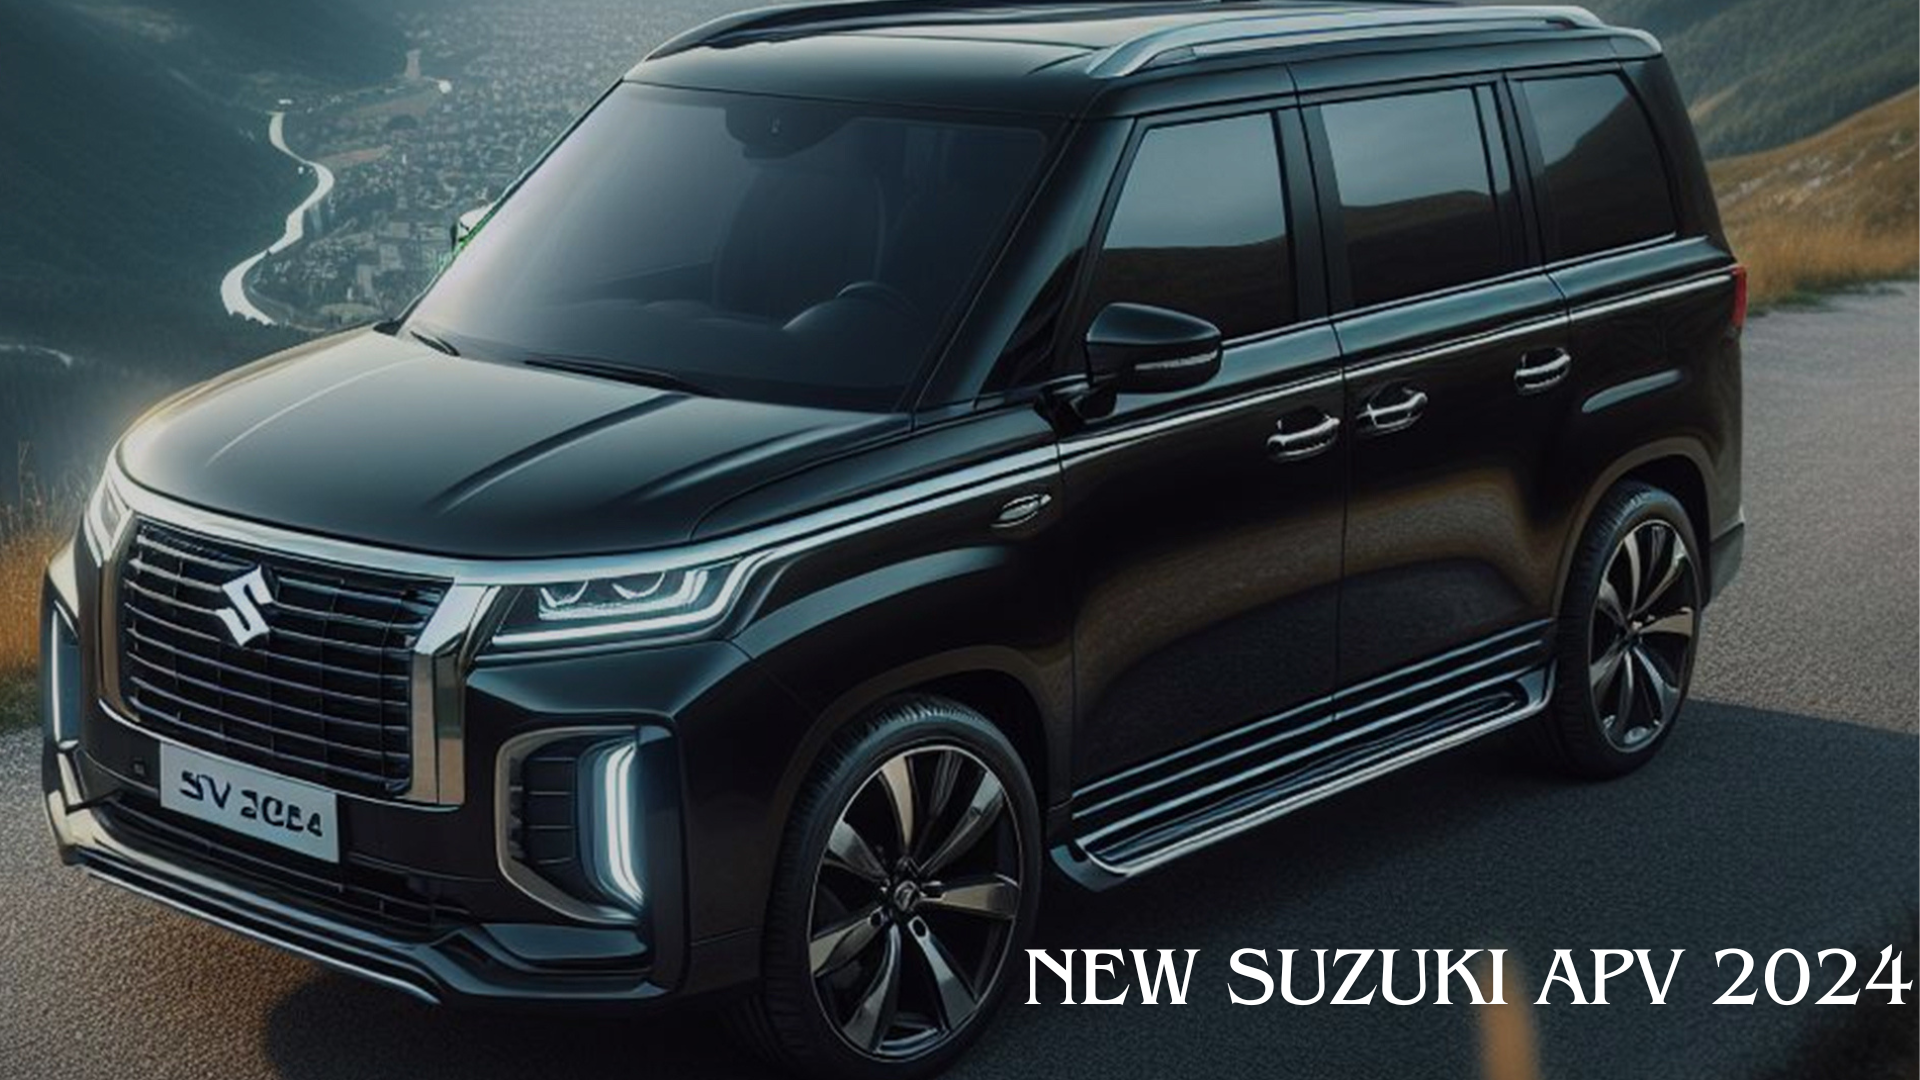 New Suzuki APV 2024, Minibus Serba Guna dengan Tampilan Mewah Saingan Mobil Premium